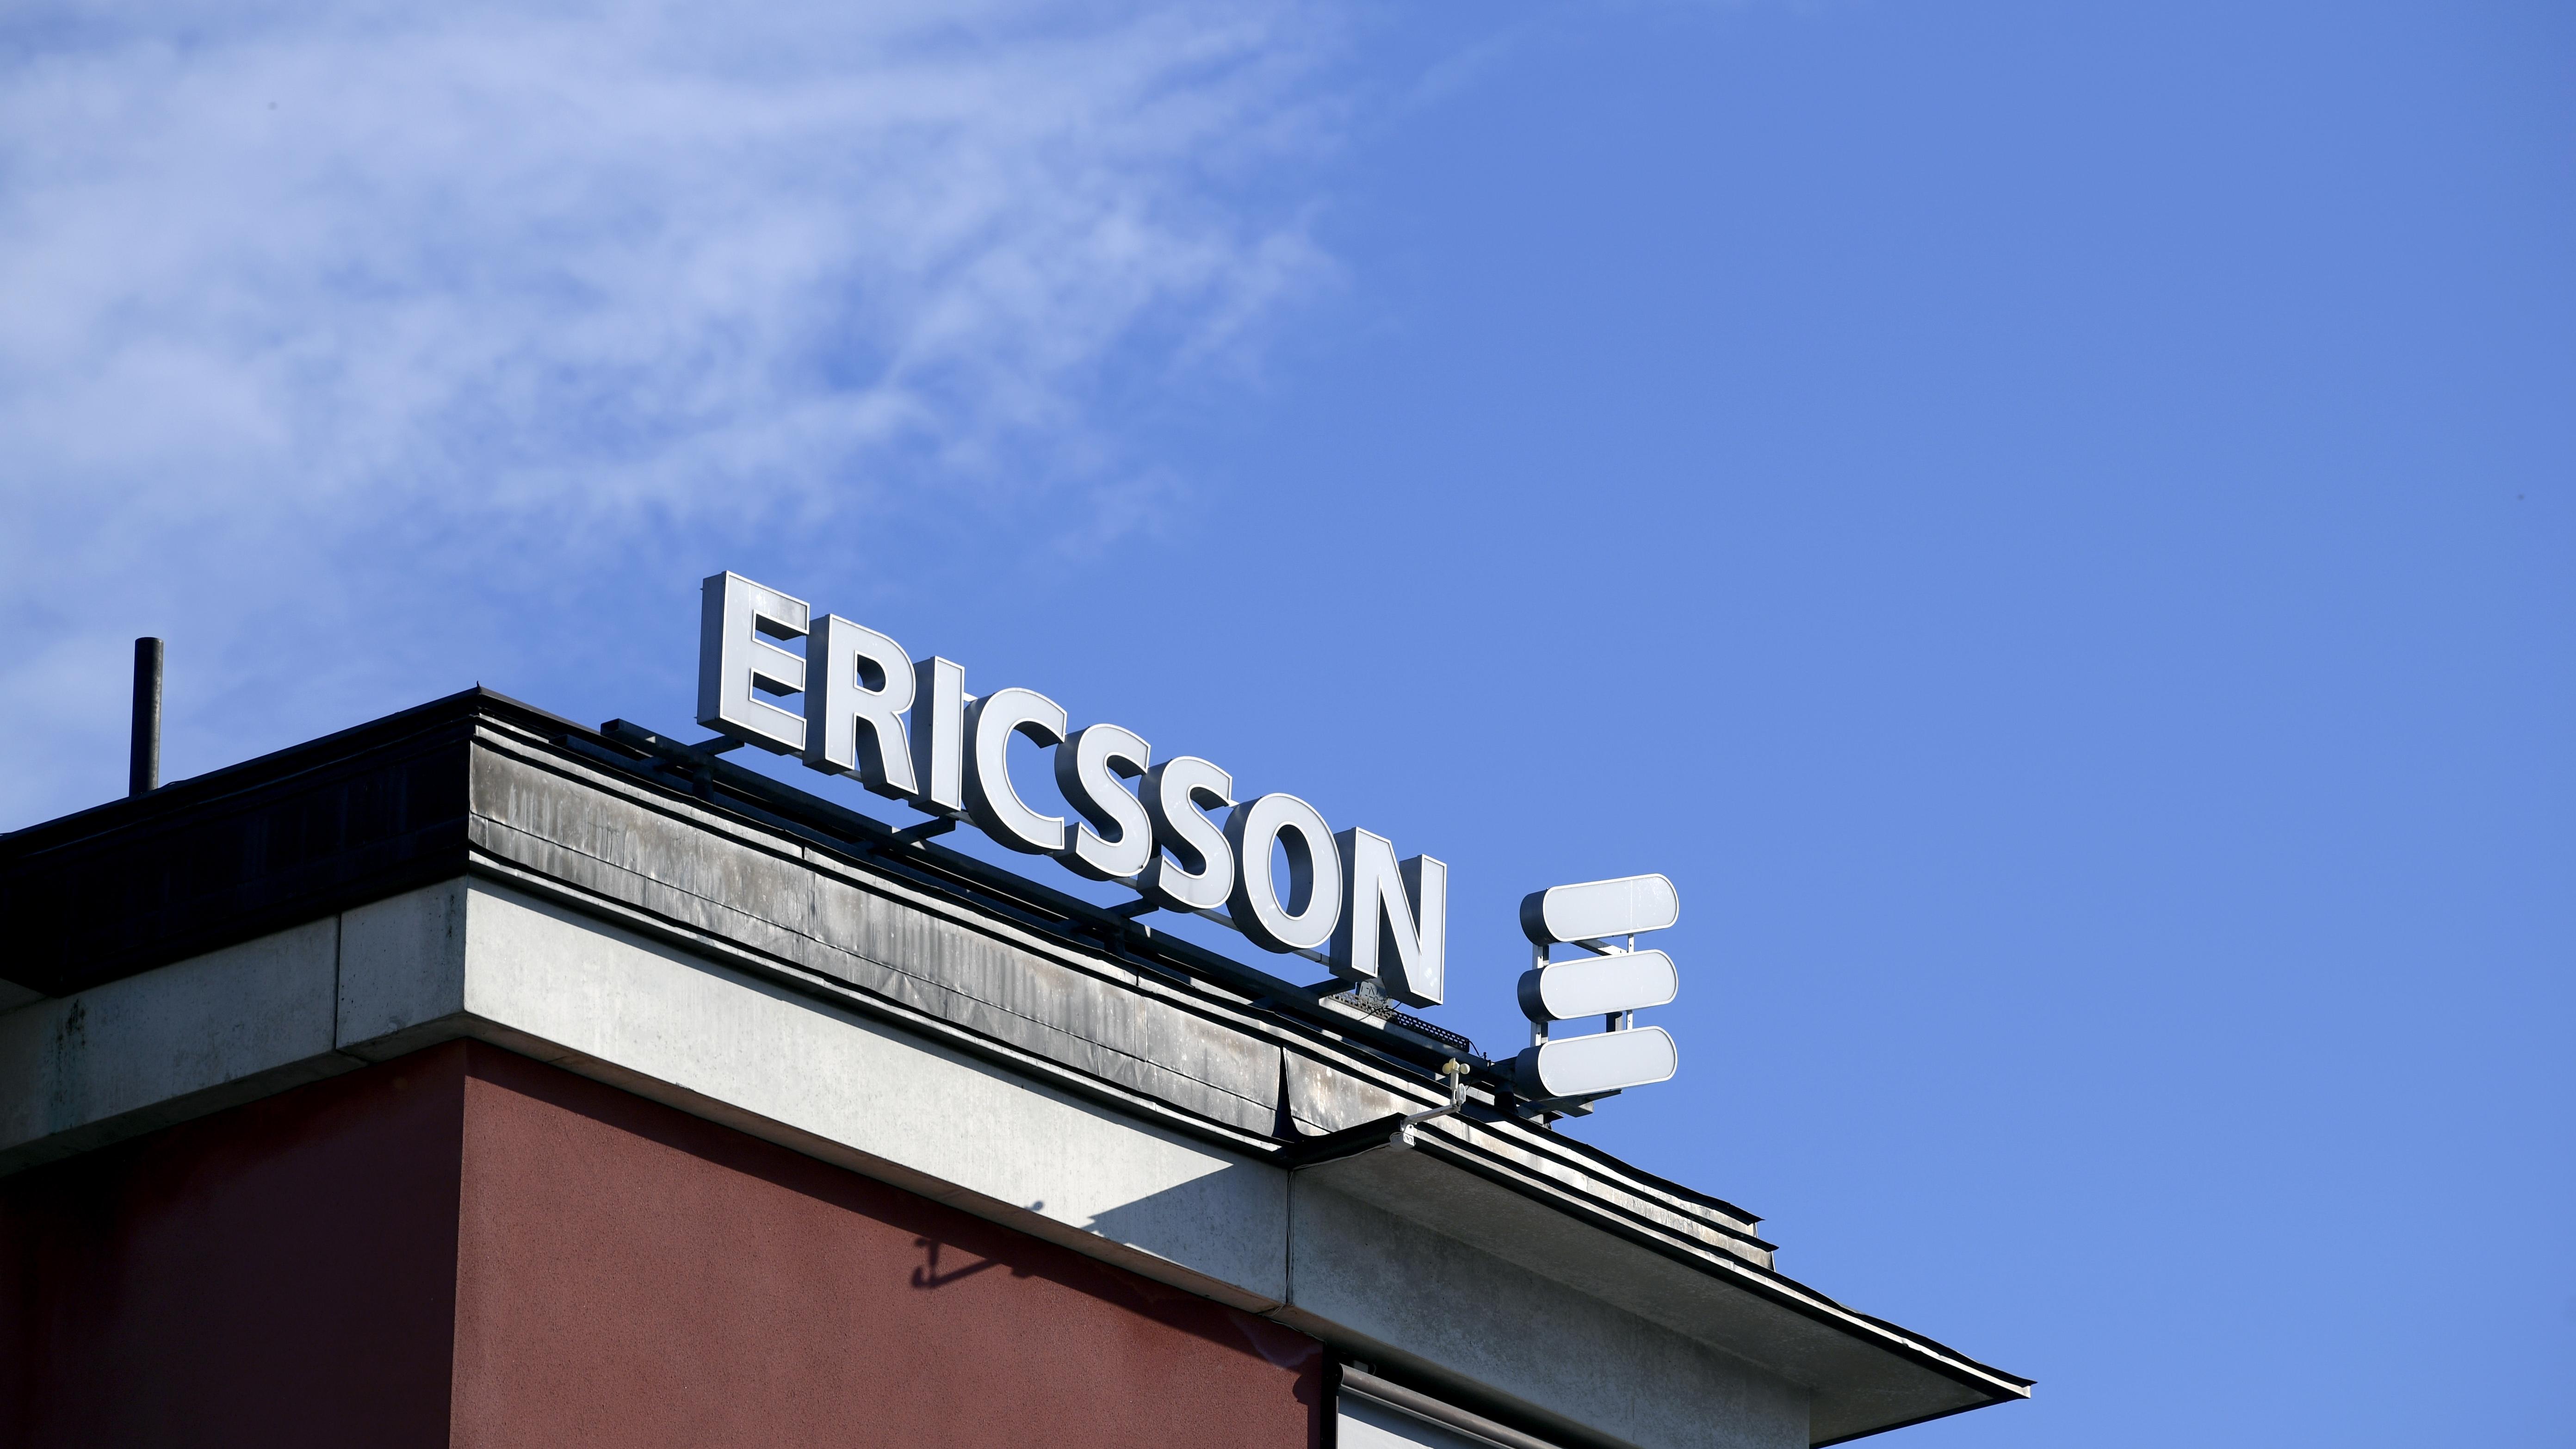 Ericsson säljer telekomutrustning i miljardaffär